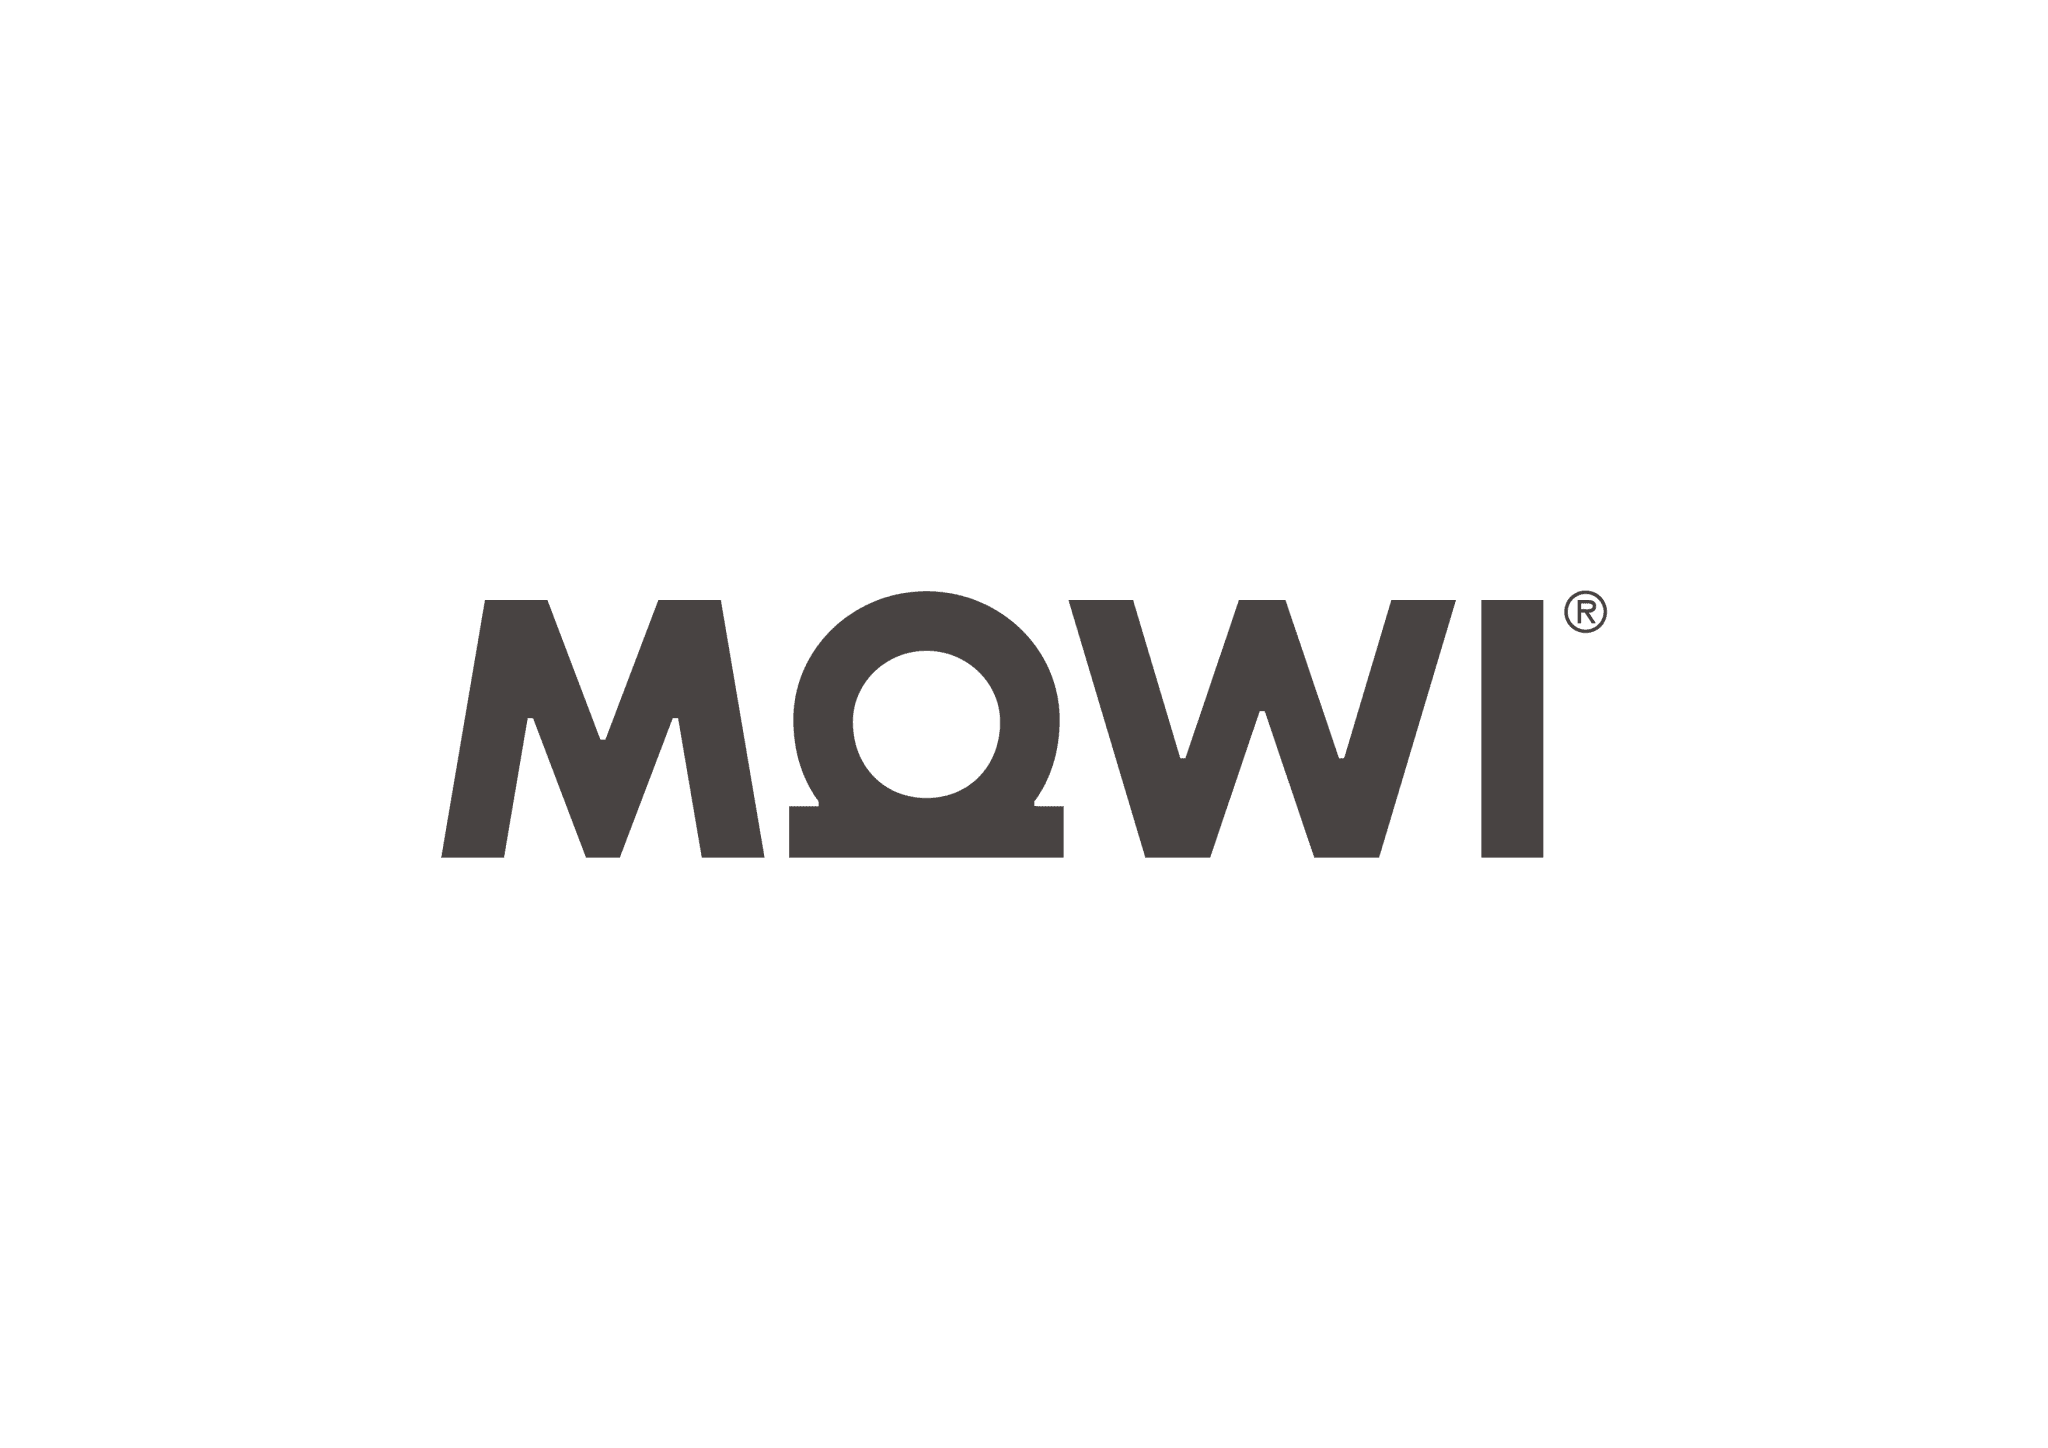 Marine Harvest cambia de marca global y nombre a Mowi